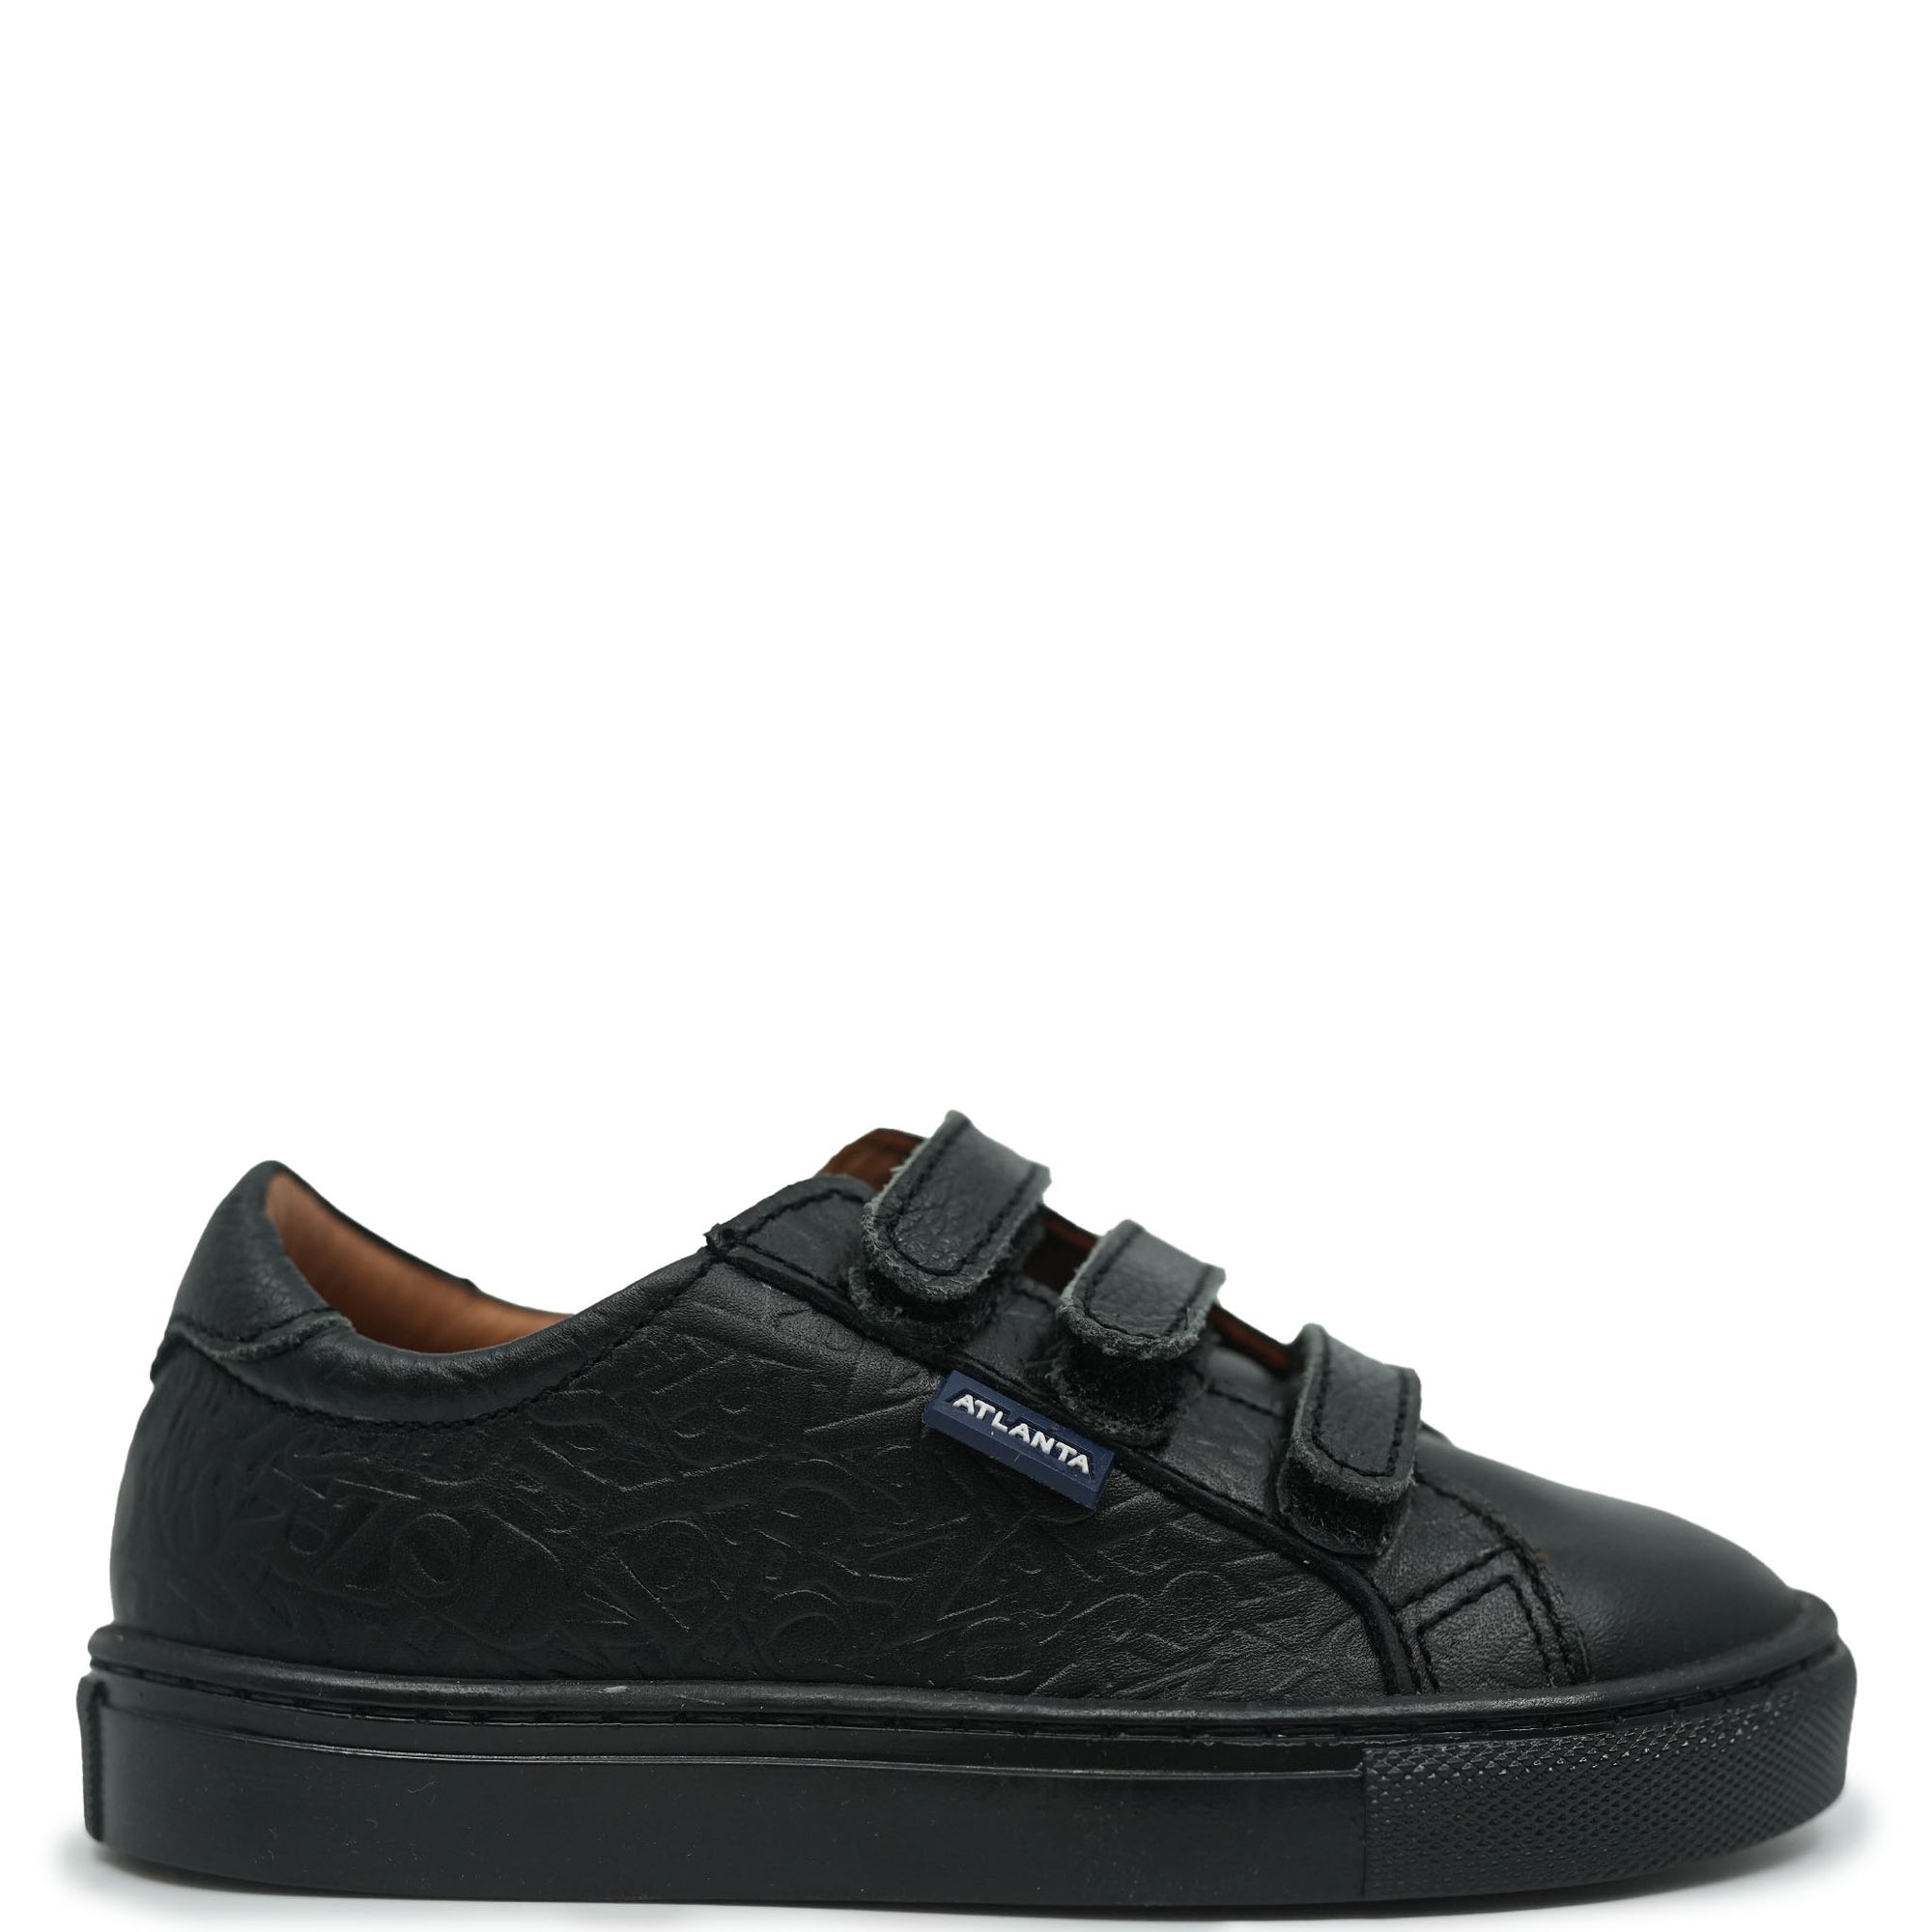 Atlanta Mocassin Black Print Velcro Sneaker-Tassel Children Shoes